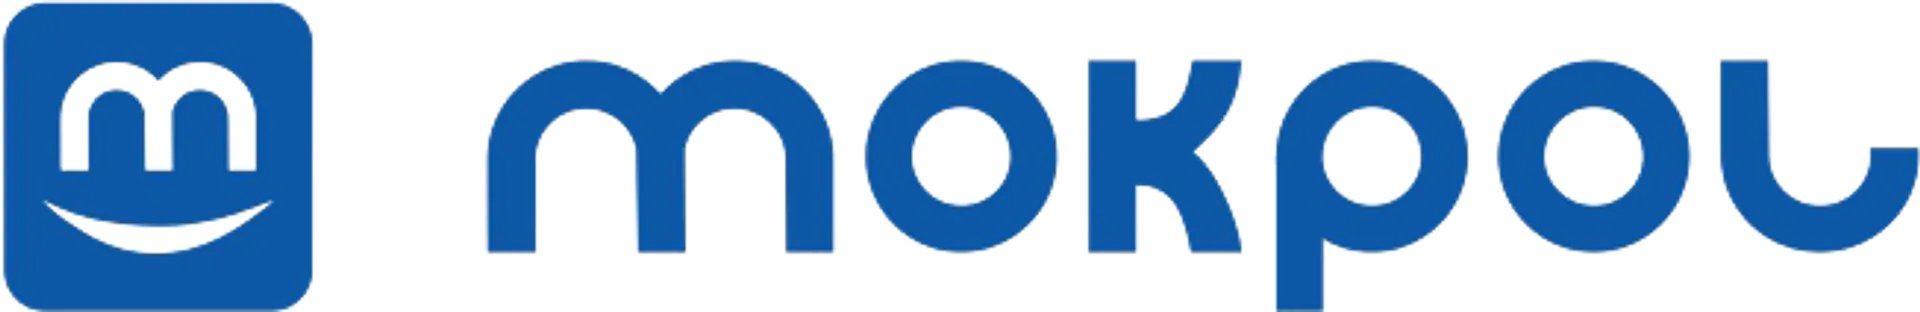 MOKPOL logo